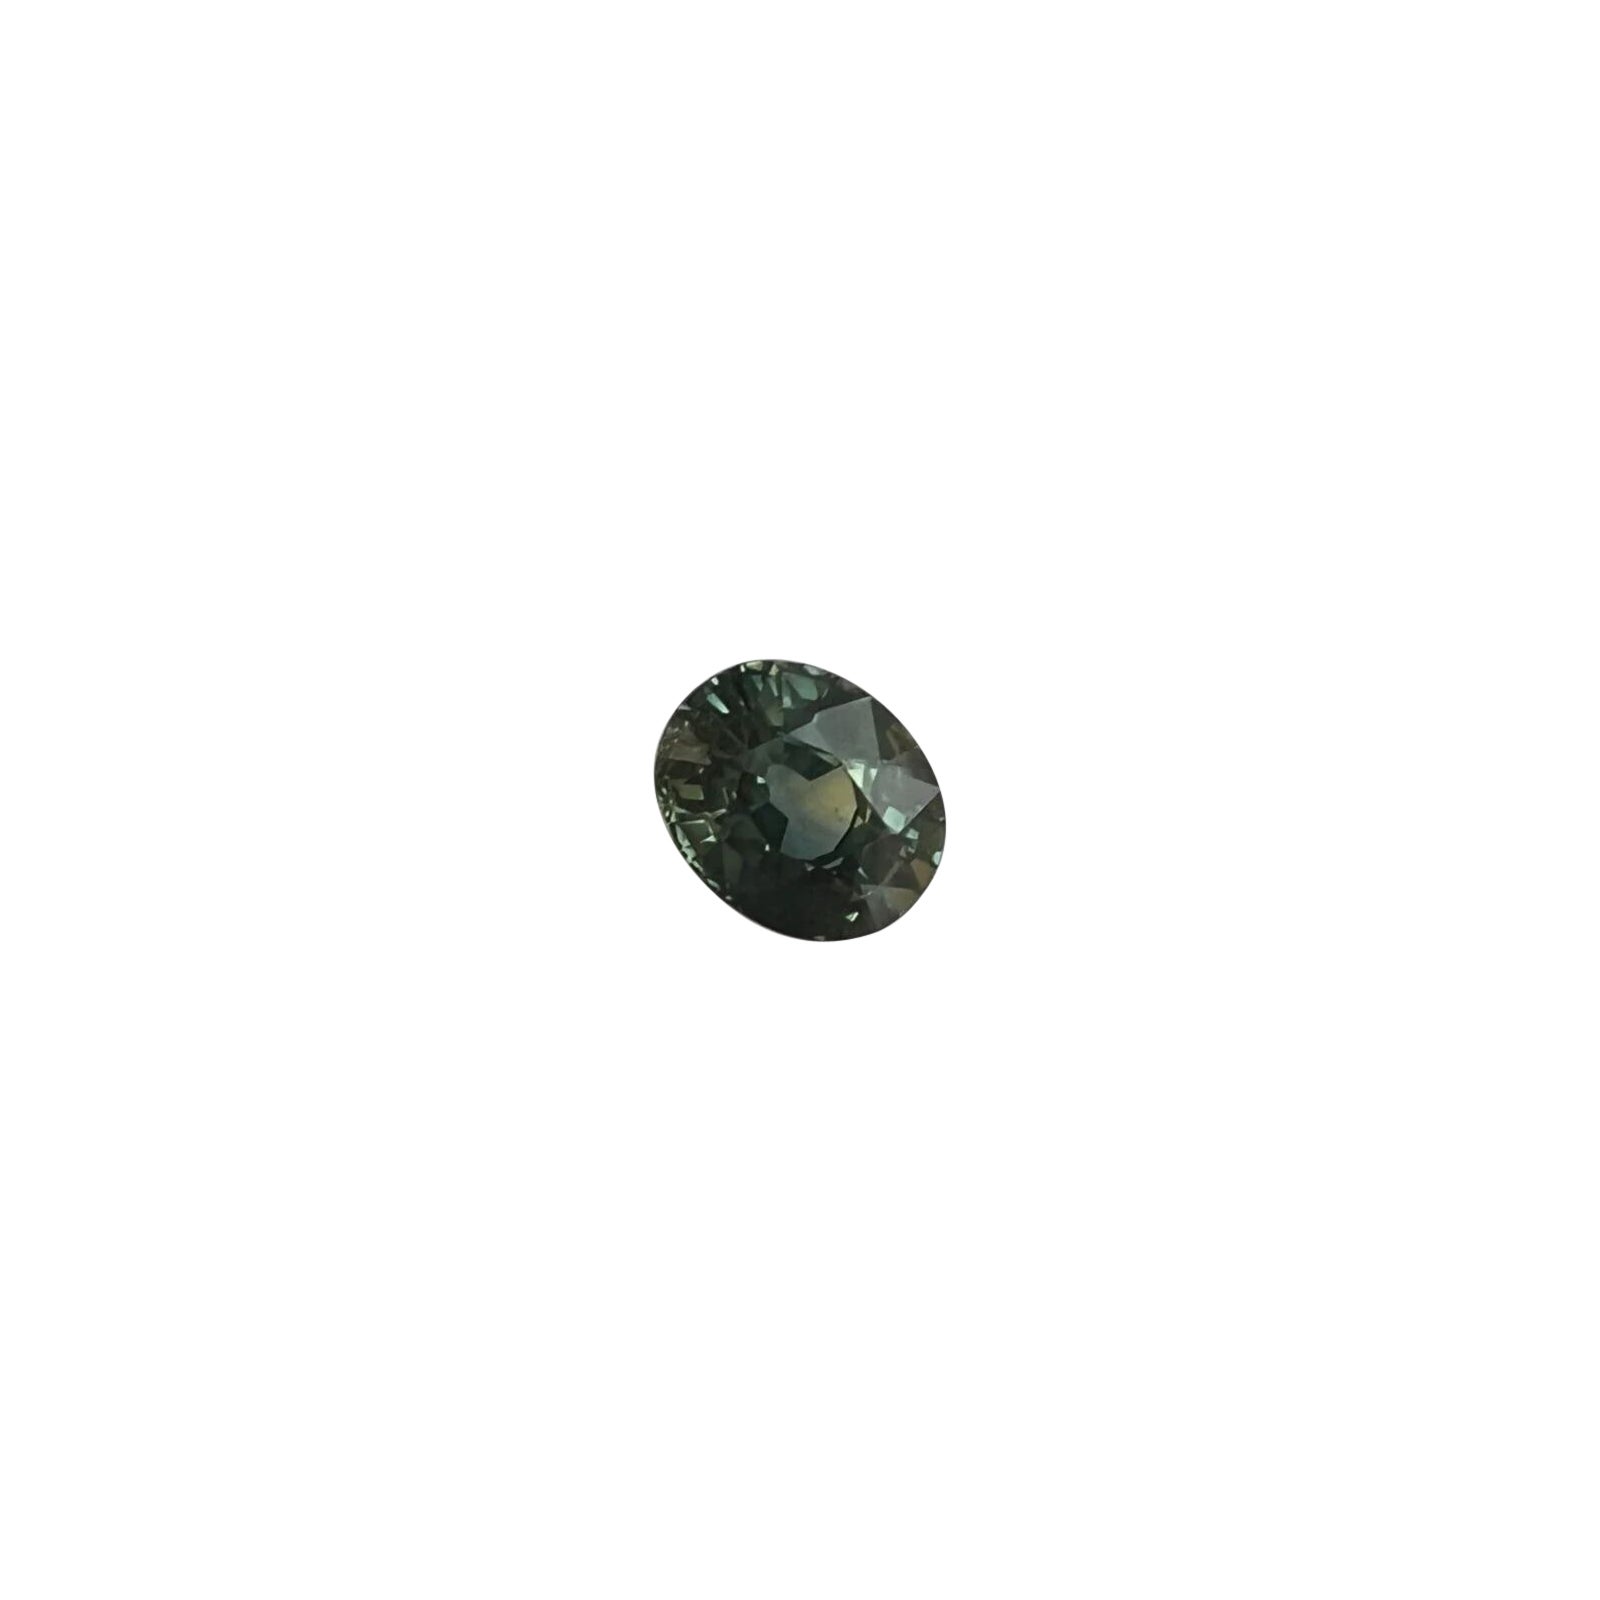 Saphir bleu foncé non chauffé taille ovale certifié IGI de 1,17 carat avec changement de couleur